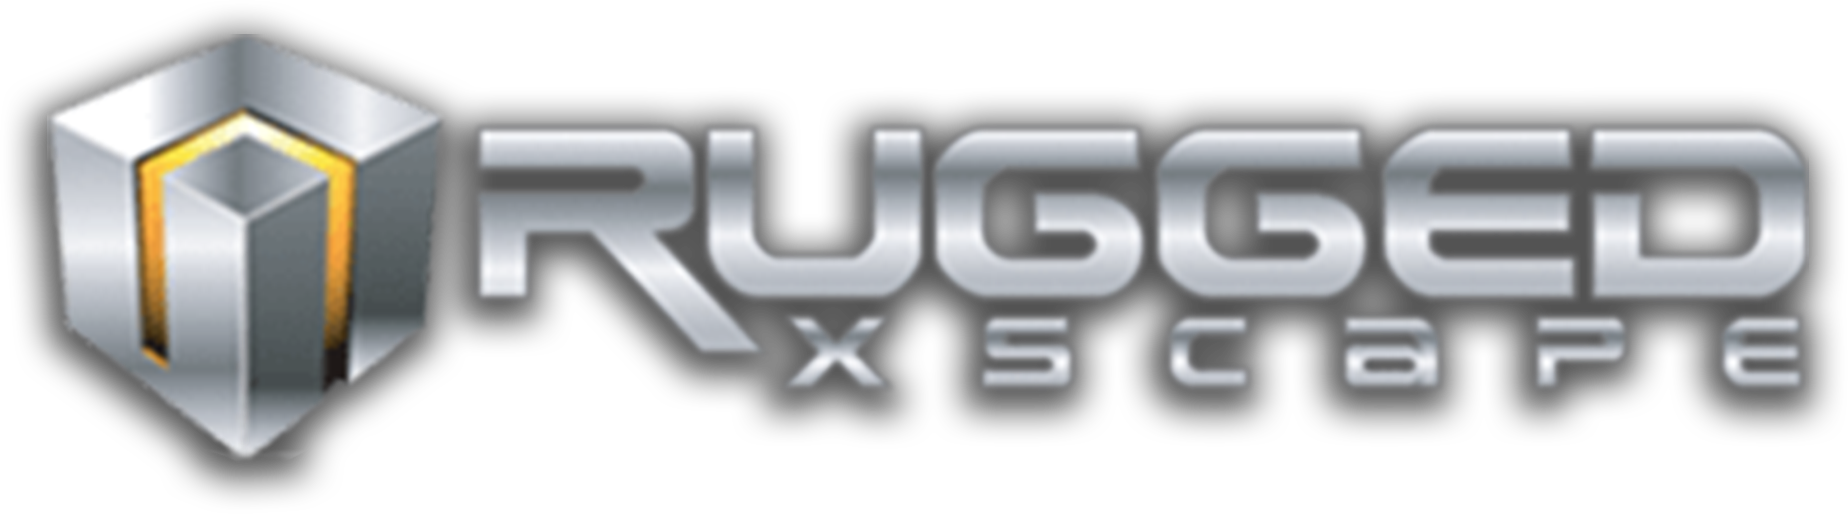 Rugged Xscape Logo PNG image